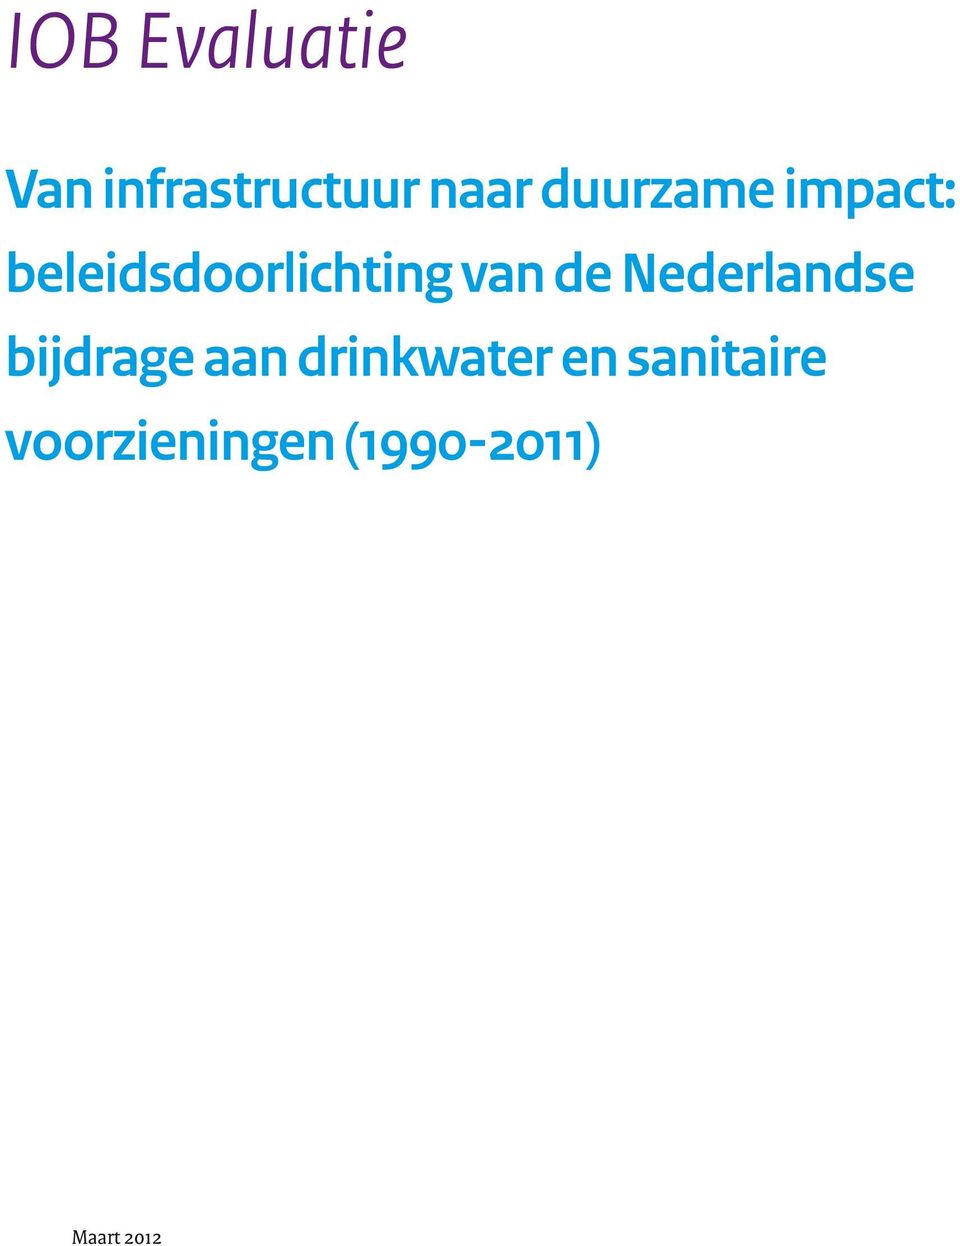 de Nederlandse bijdrage aan drinkwater